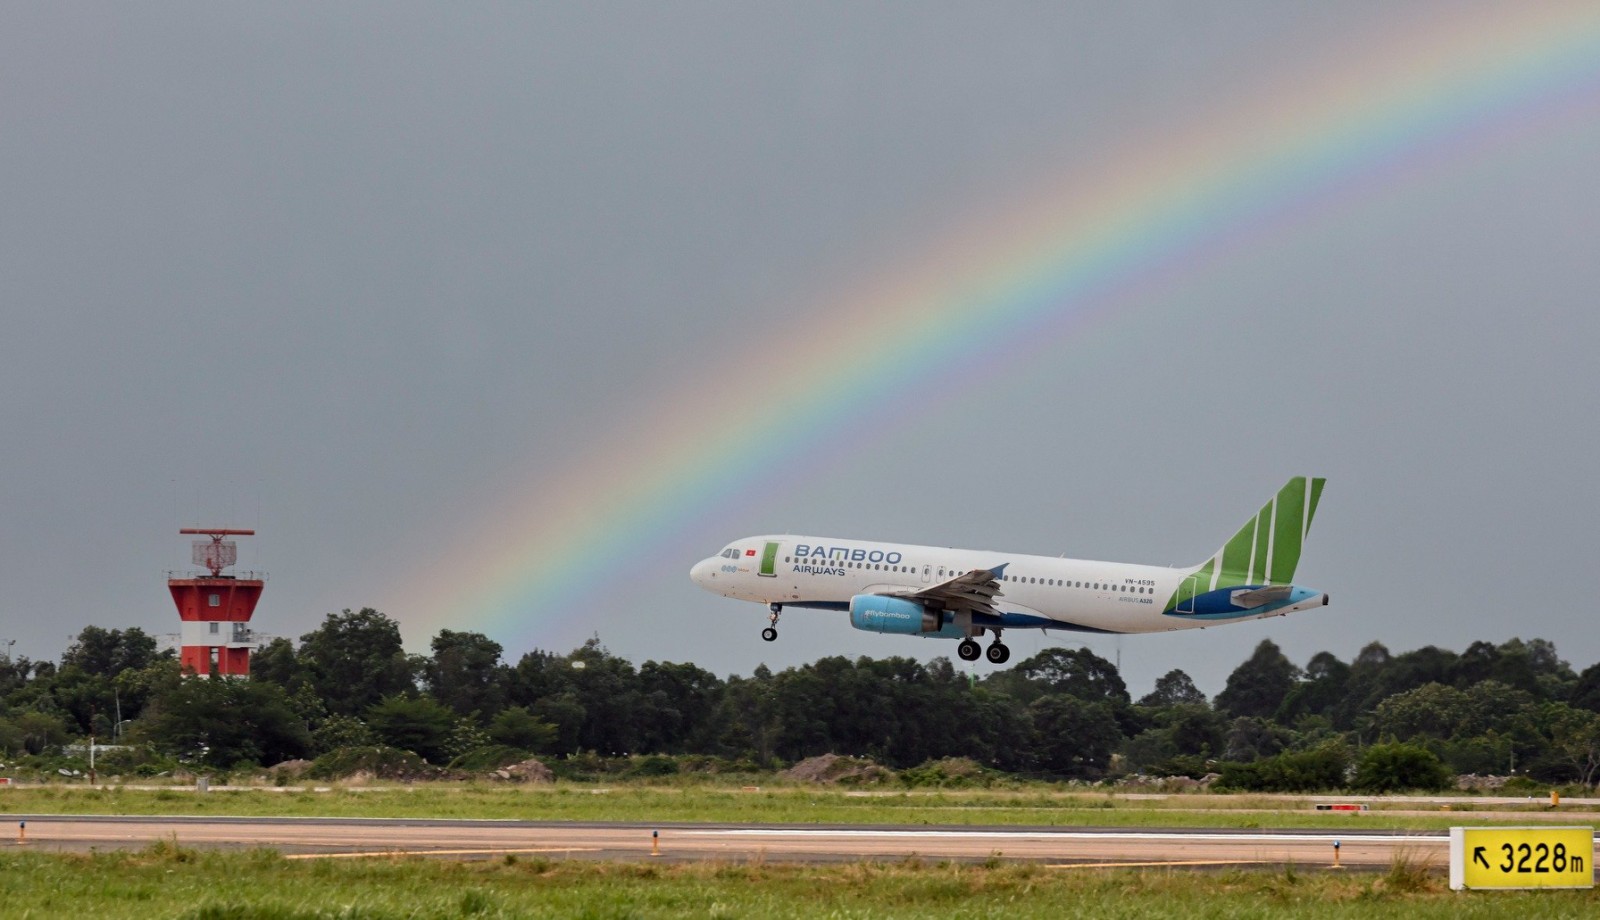 Đón hè rực rỡ, rinh ưu đãi 20% giá vé máy bay với Bamboo Holidays - Ảnh 3.